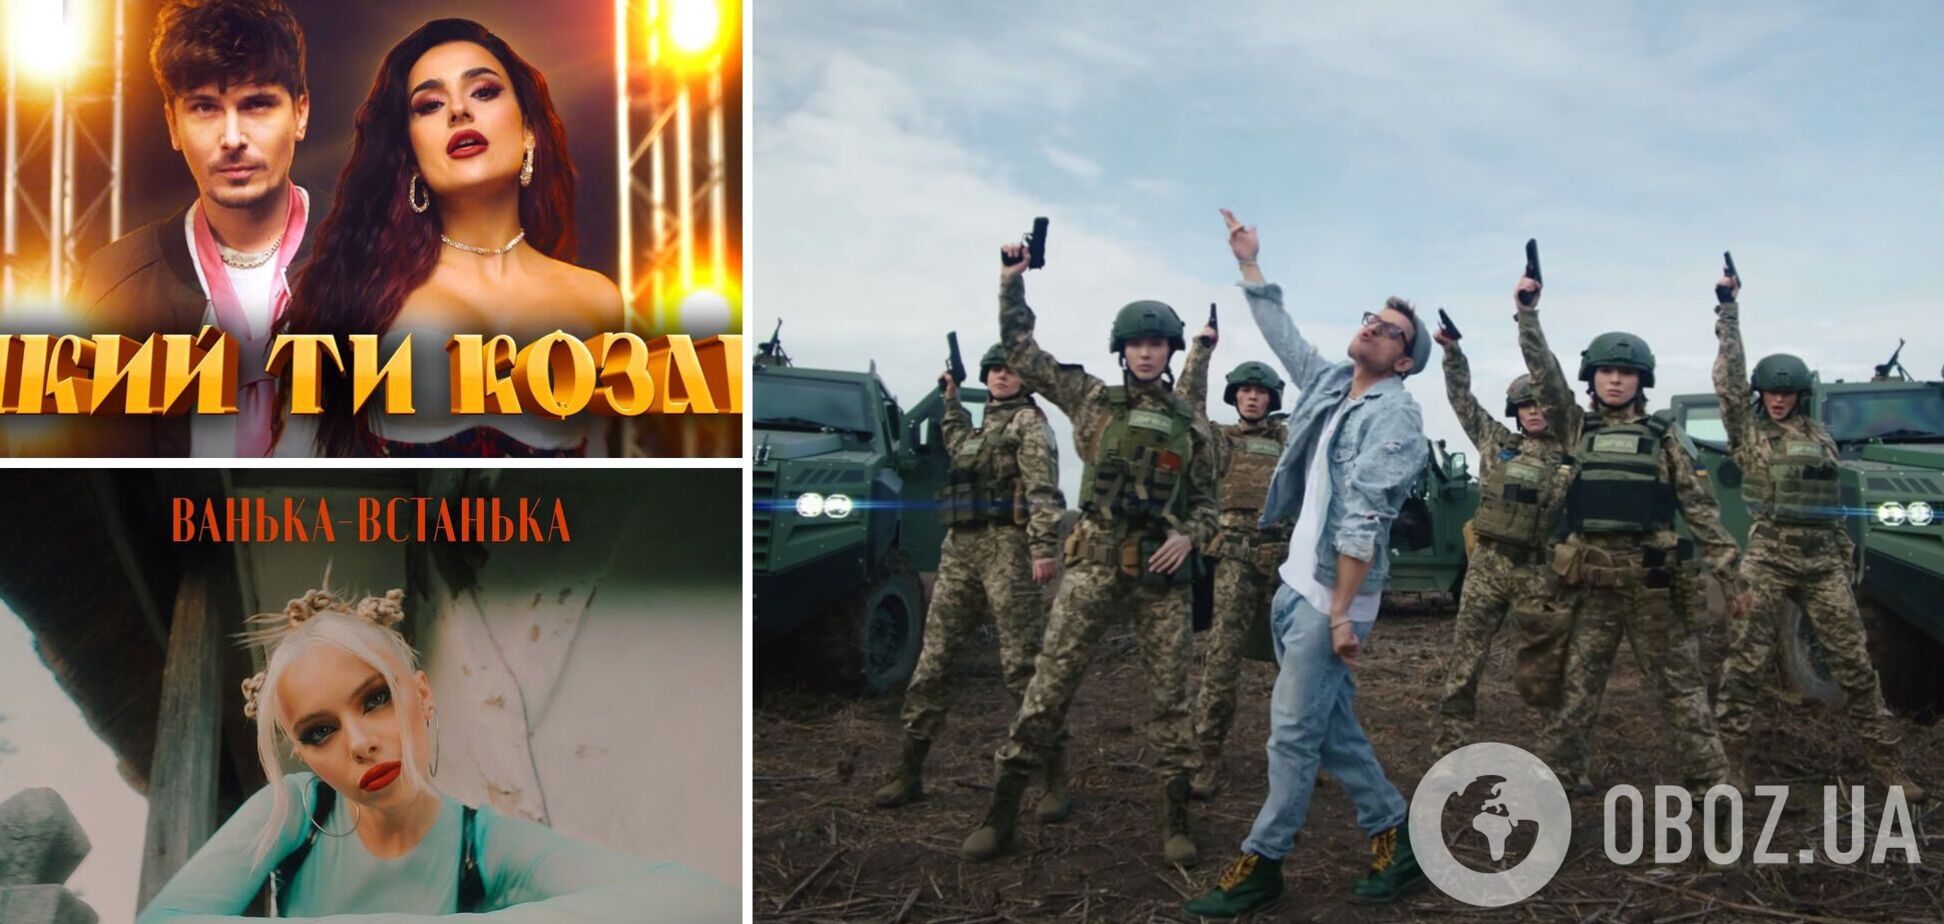 'Дика дичка', 'Гопак', Ванька-встанька' та інша шароварщина: добірка треків, які вщент розкритикували українці